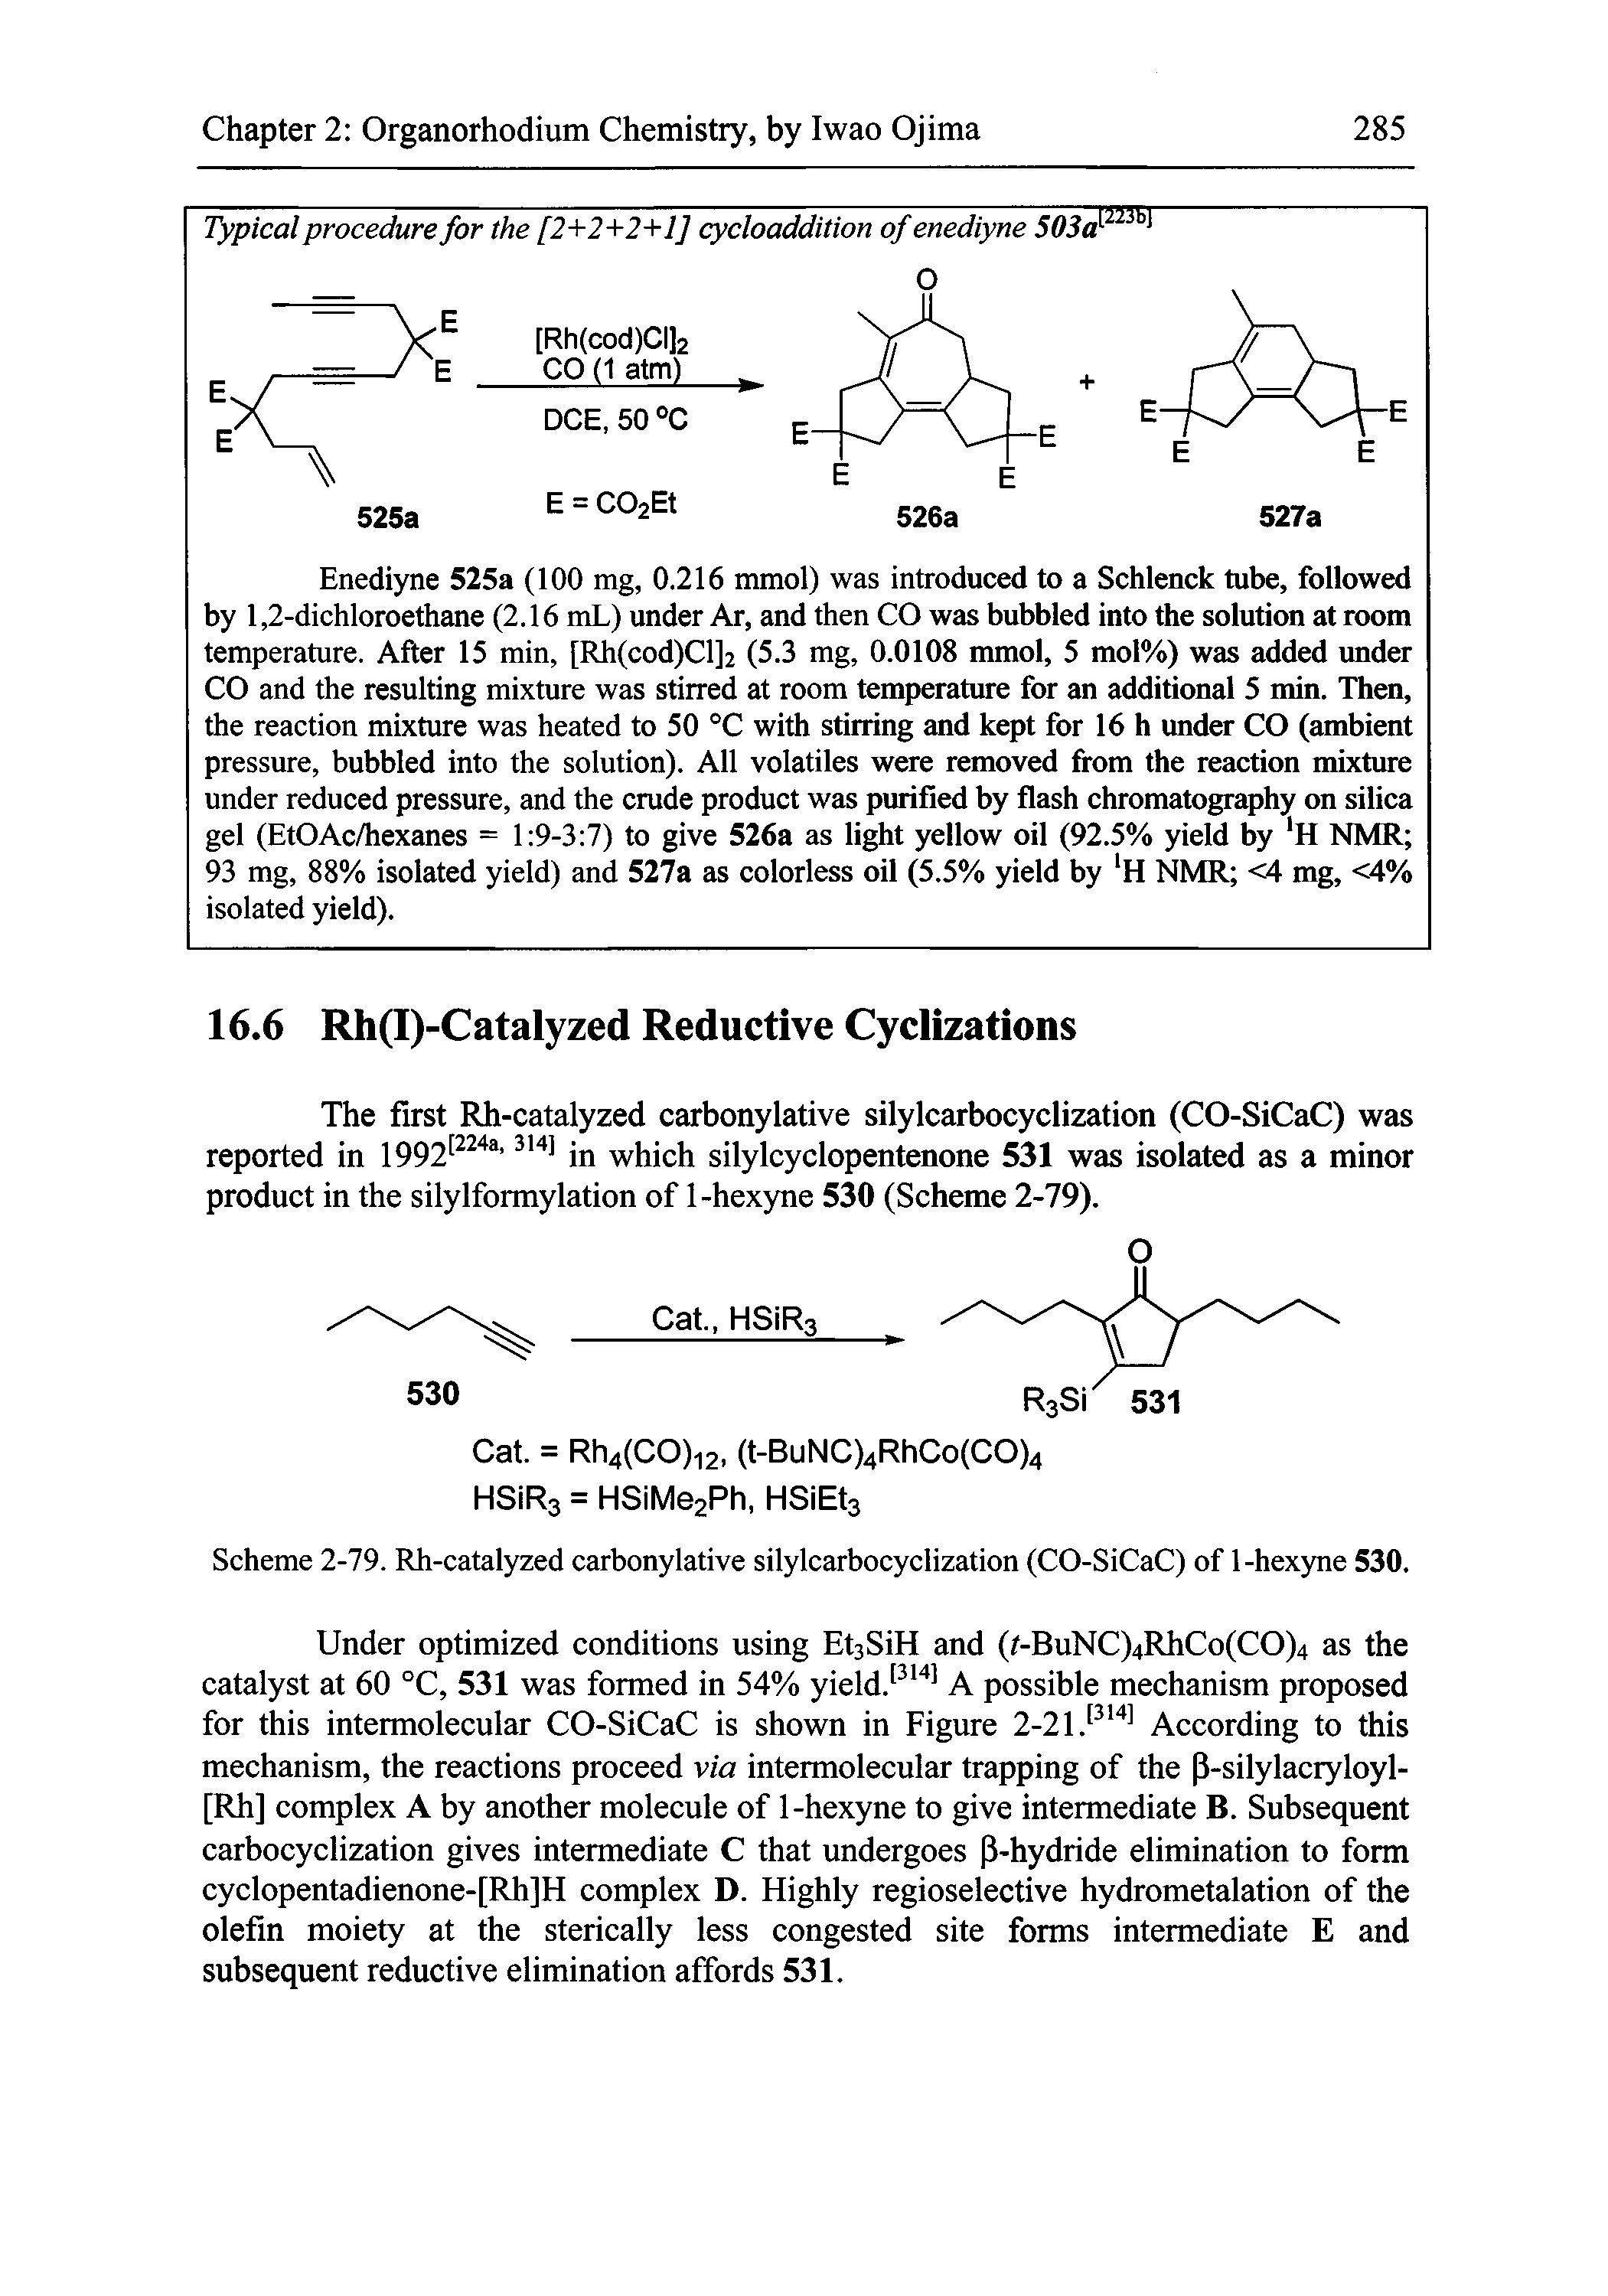 Scheme 2-79. Rh-catalyzed carbonylative silylcarbocyclization (CO-SiCaC) of 1-hexyne 530.